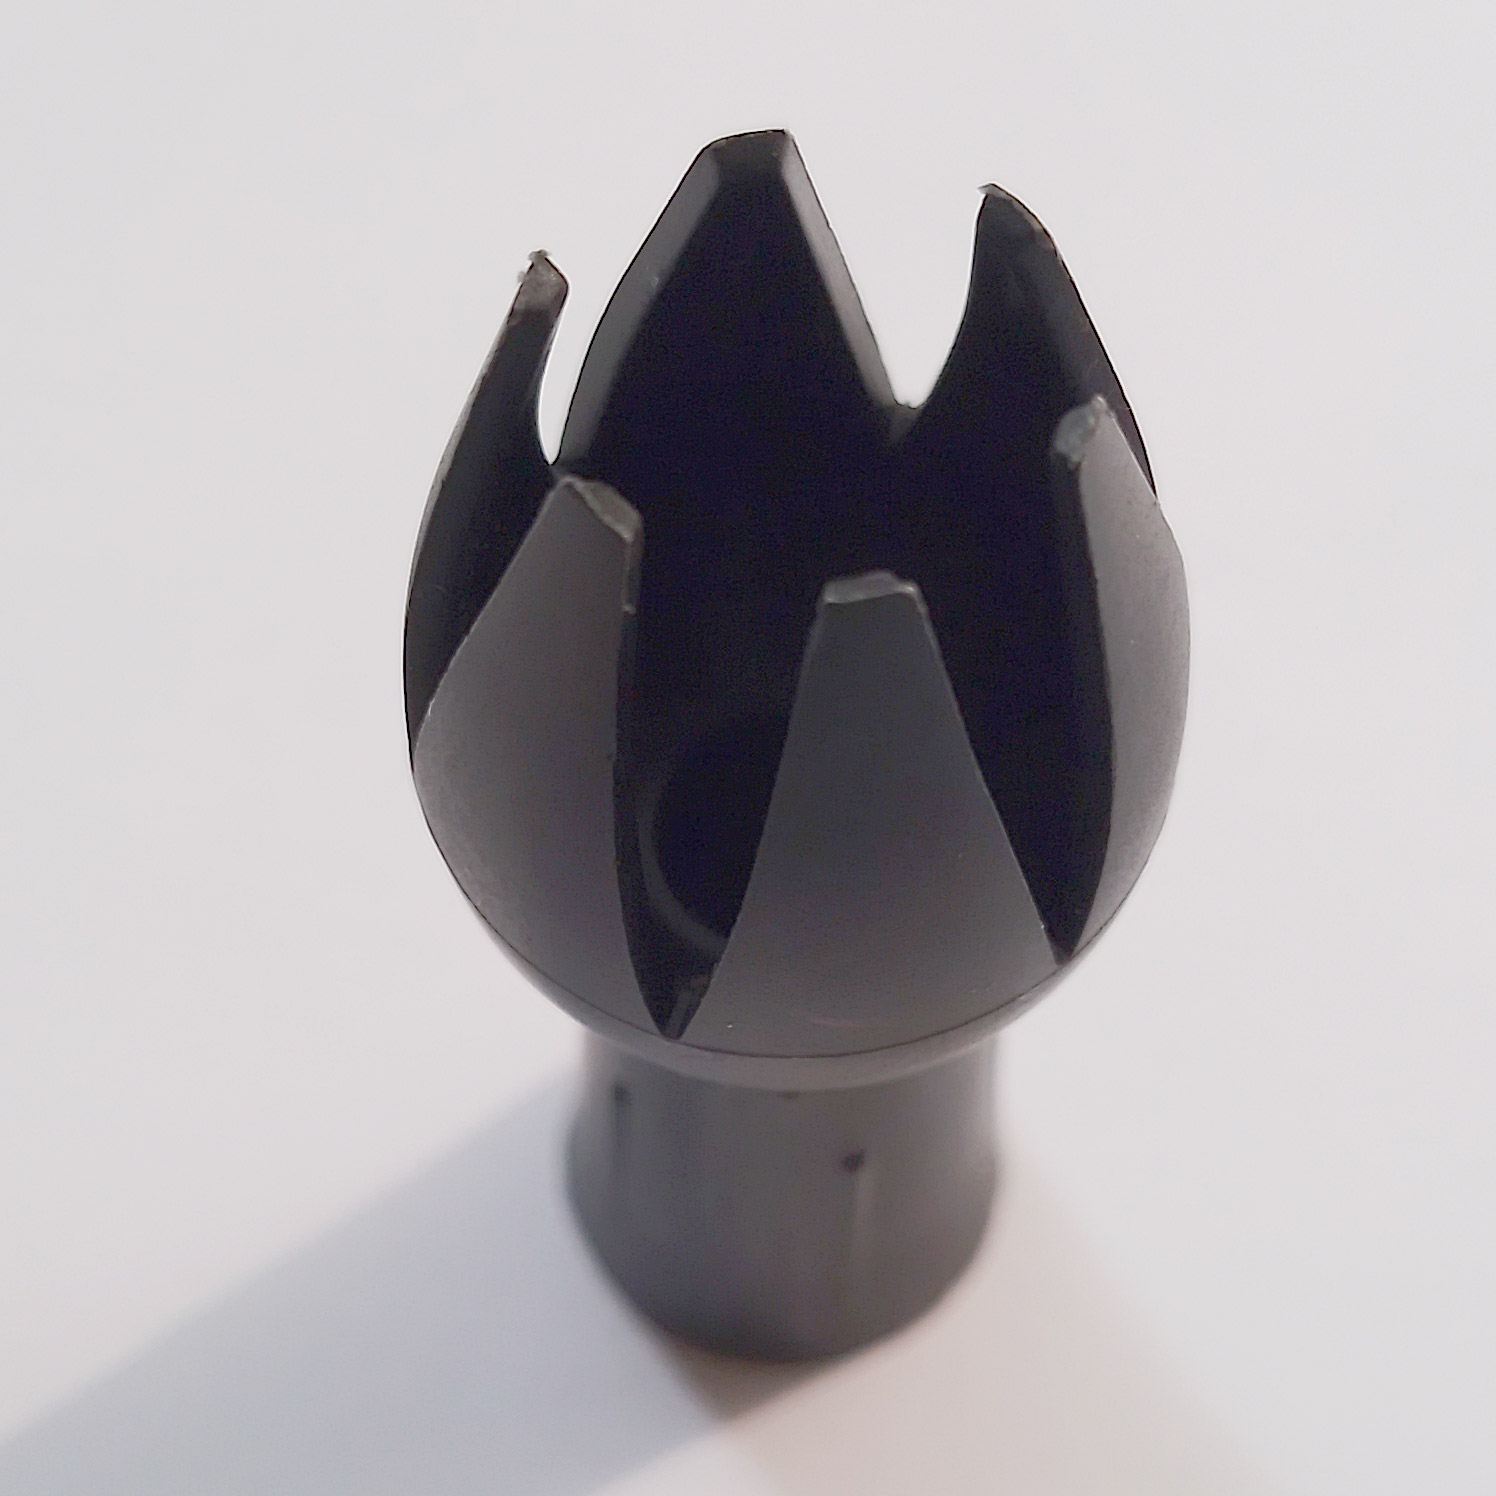 Четвертое дополнительное изображение для товара Насадка "тюльпан" для кулинарного сифона (кремера) Kayser Inox WhipCreamer, деталь K515C